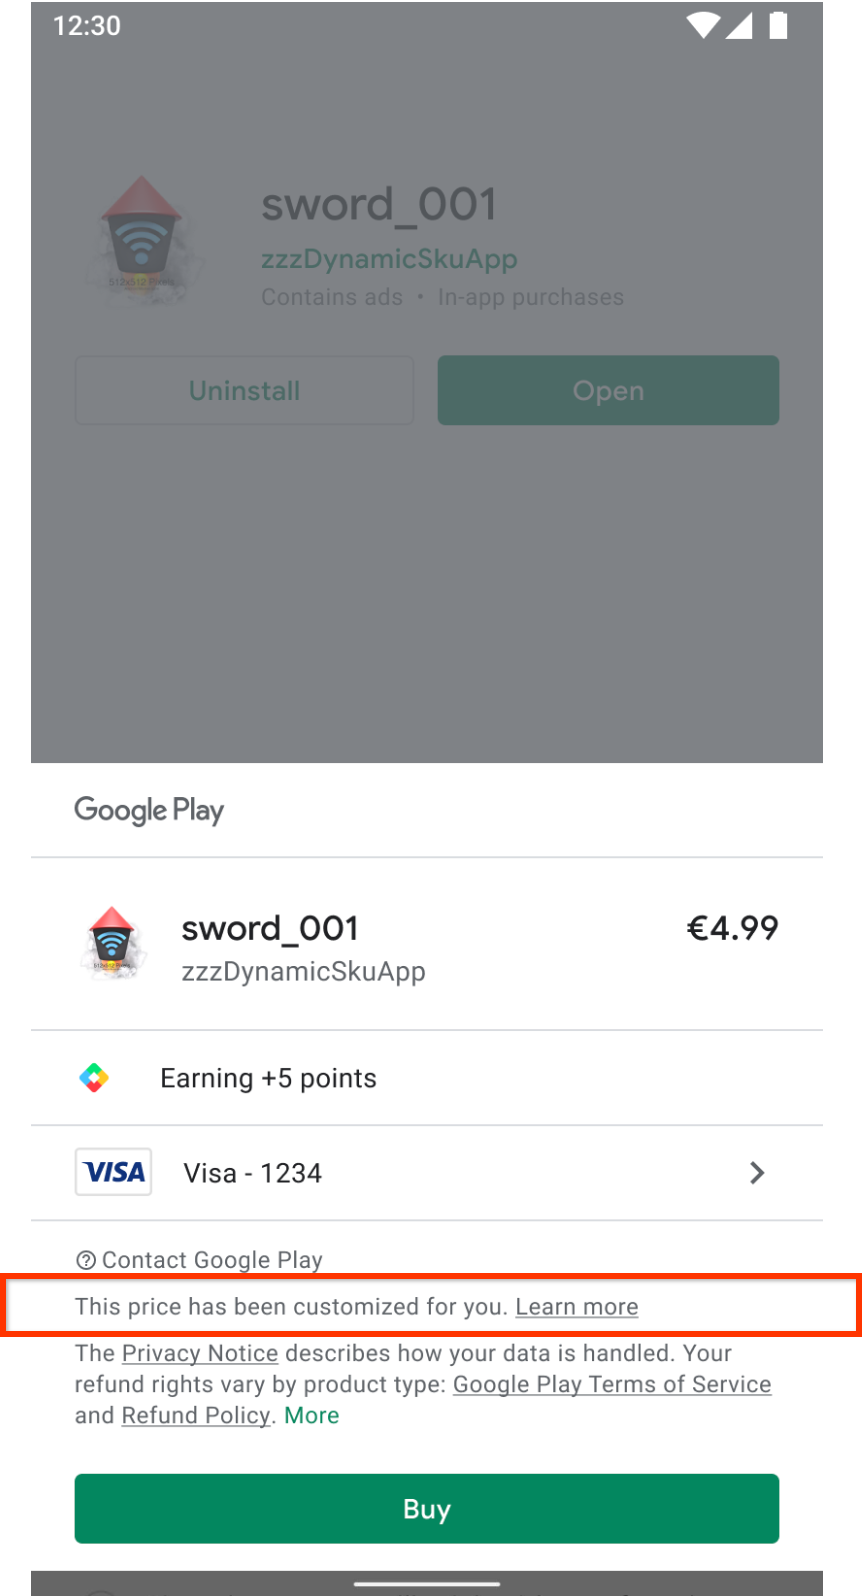 Écran d'achat Google Play indiquant que le prix a été personnalisé pour l'utilisateur